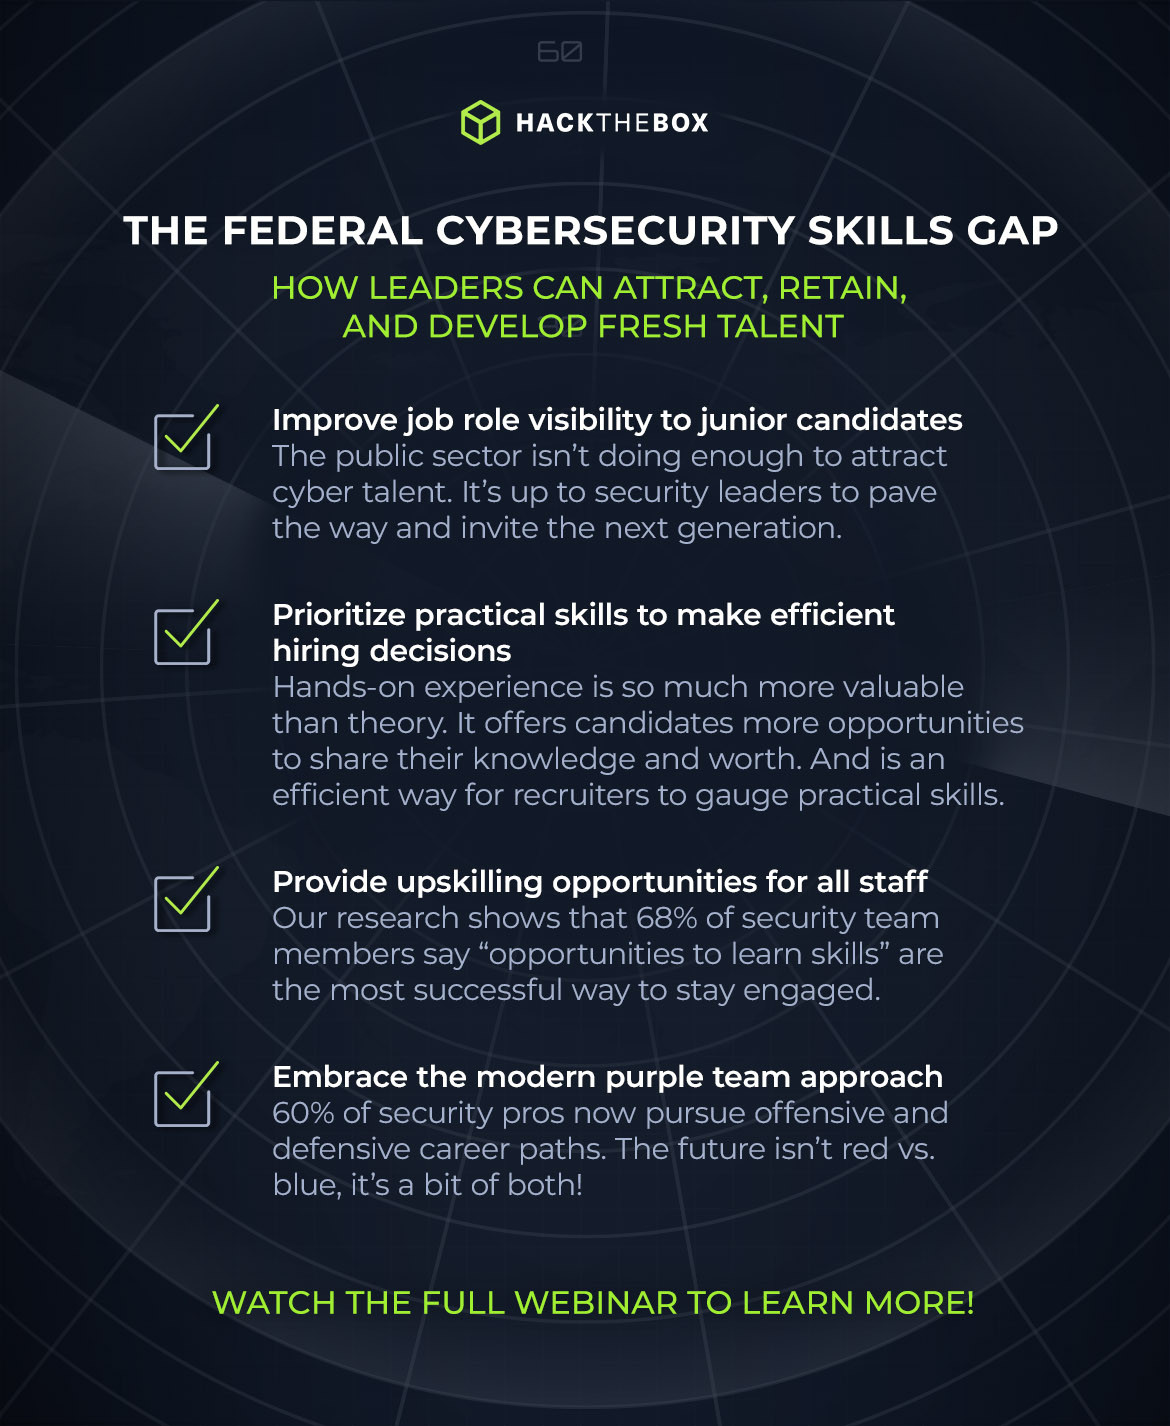 Federal cybersecurity skills gap